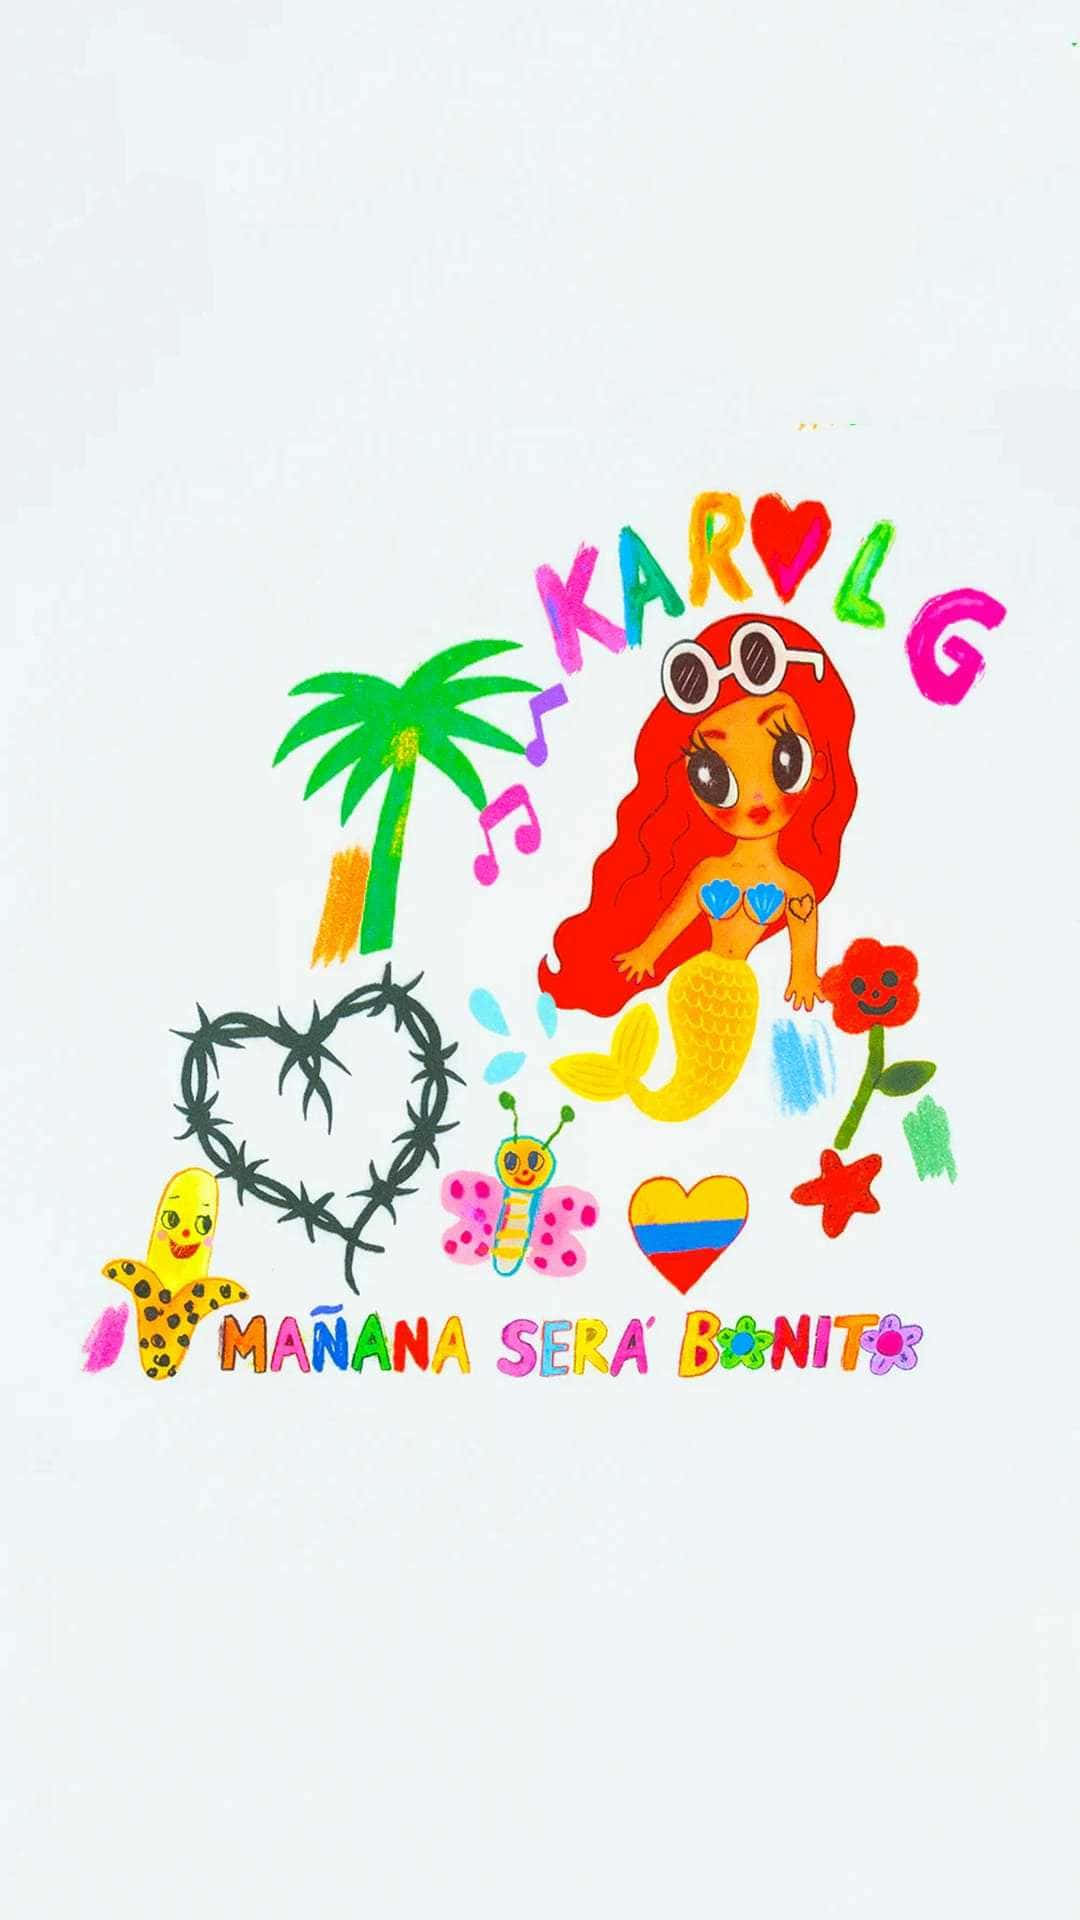 Colorful Karol G Manana Sera Bonito Artwork Wallpaper